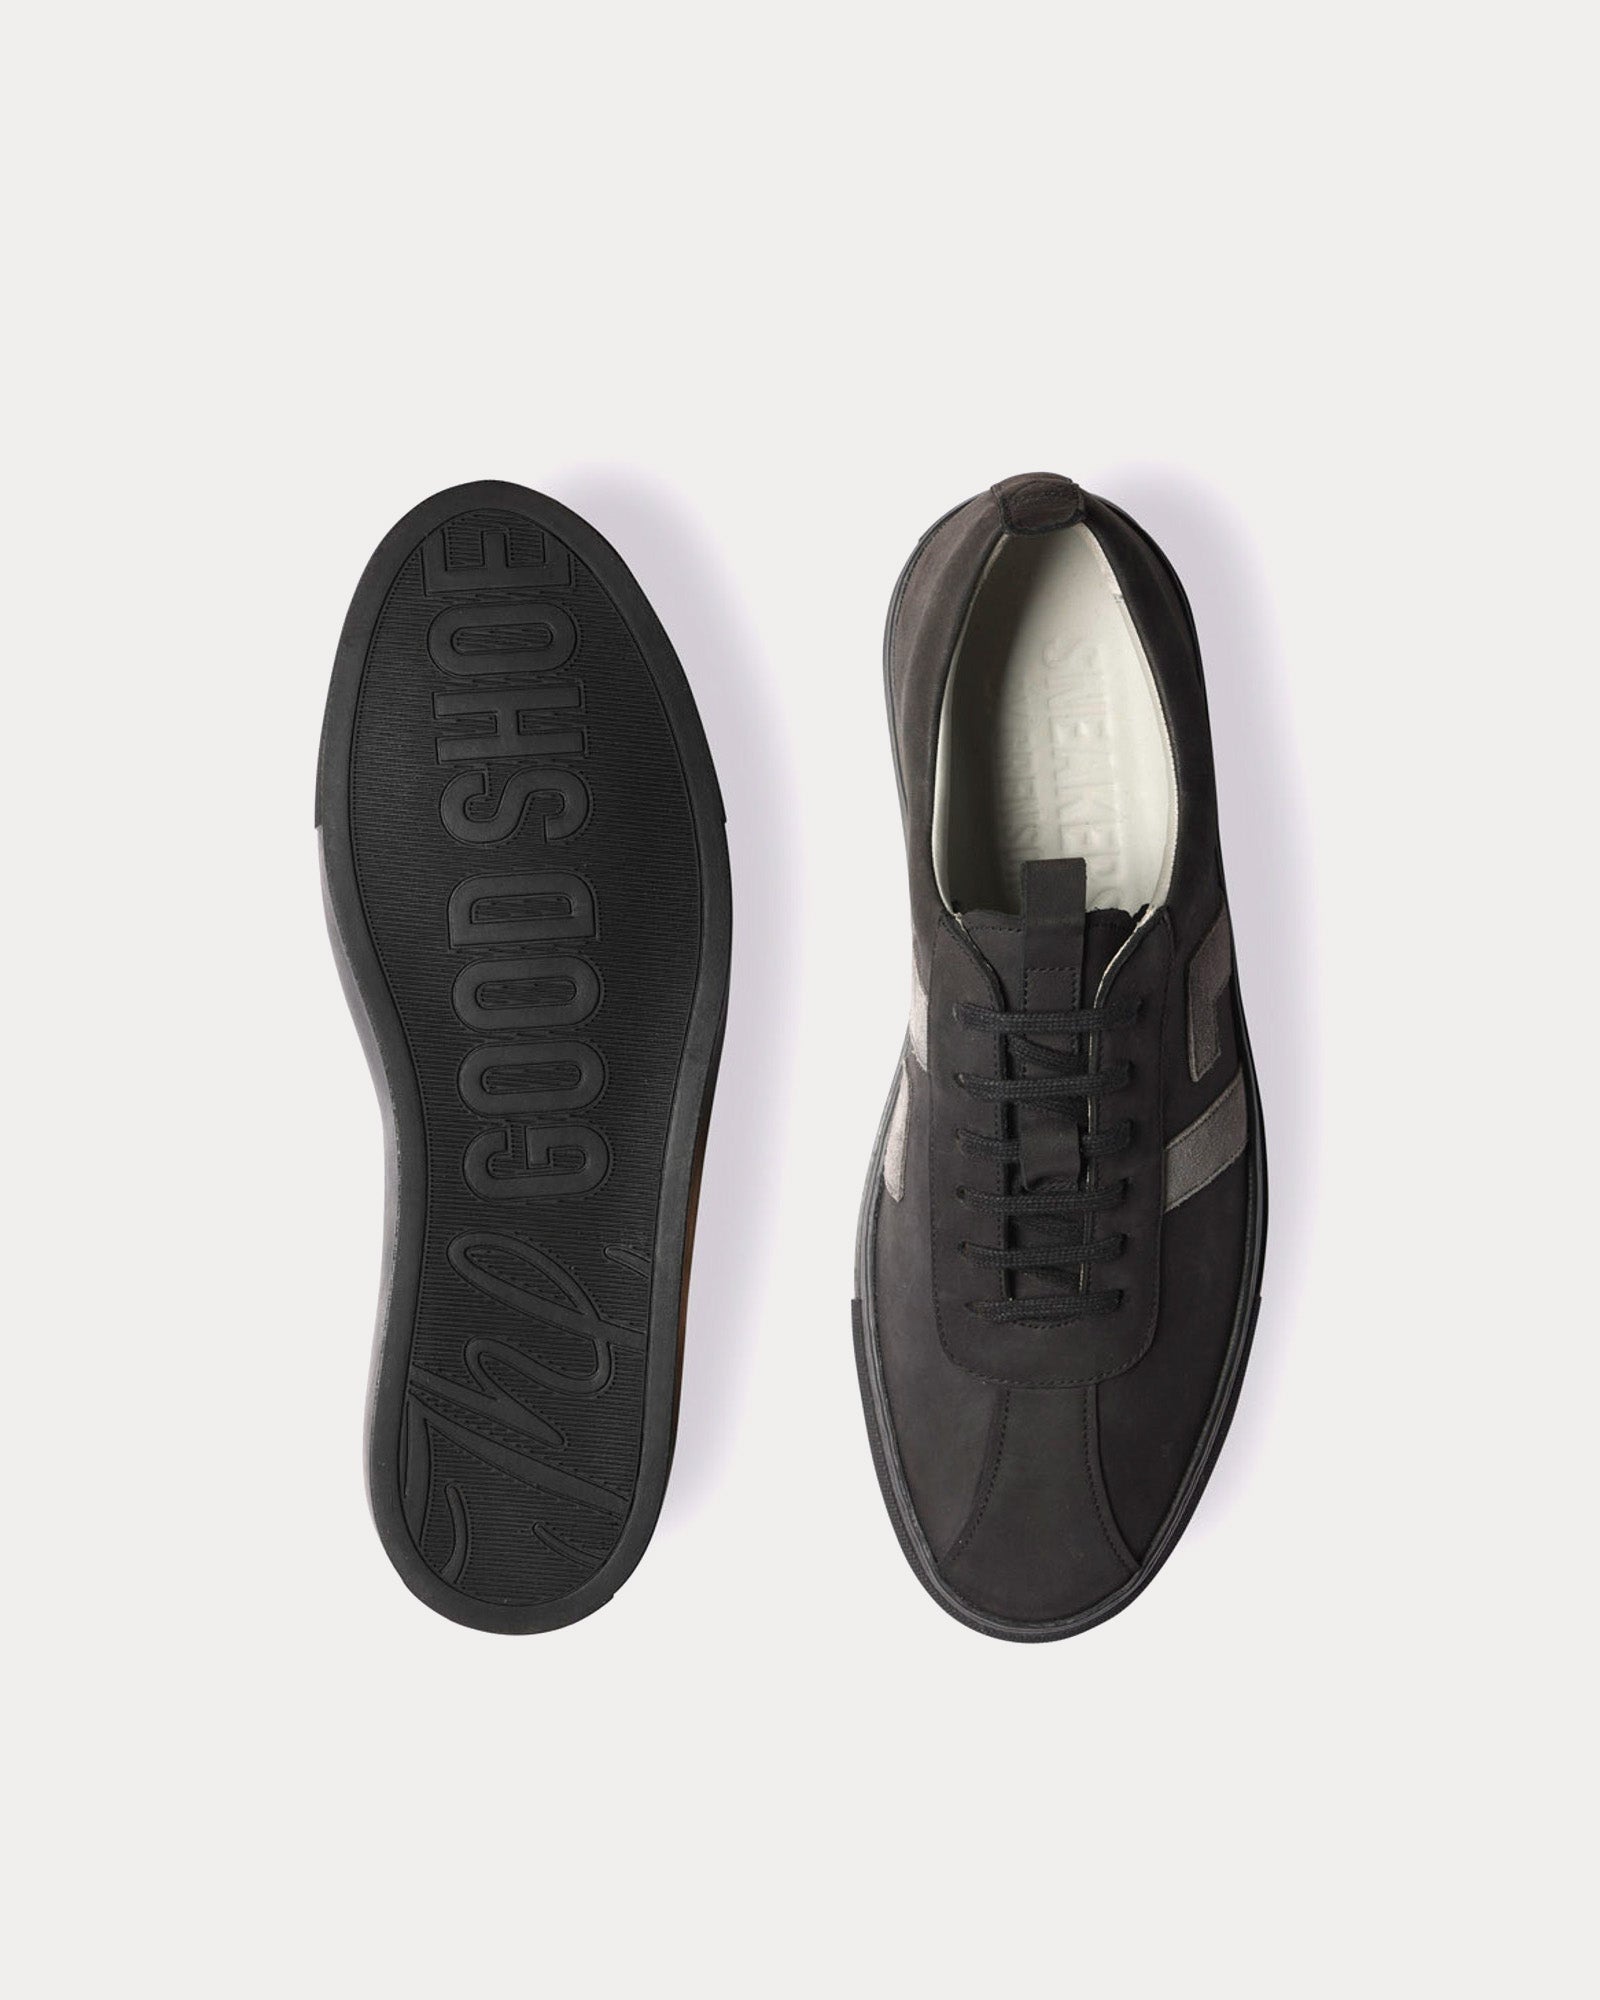 Grenson - Sneaker 67 Nubuck Black / Grey Low Top Sneakers